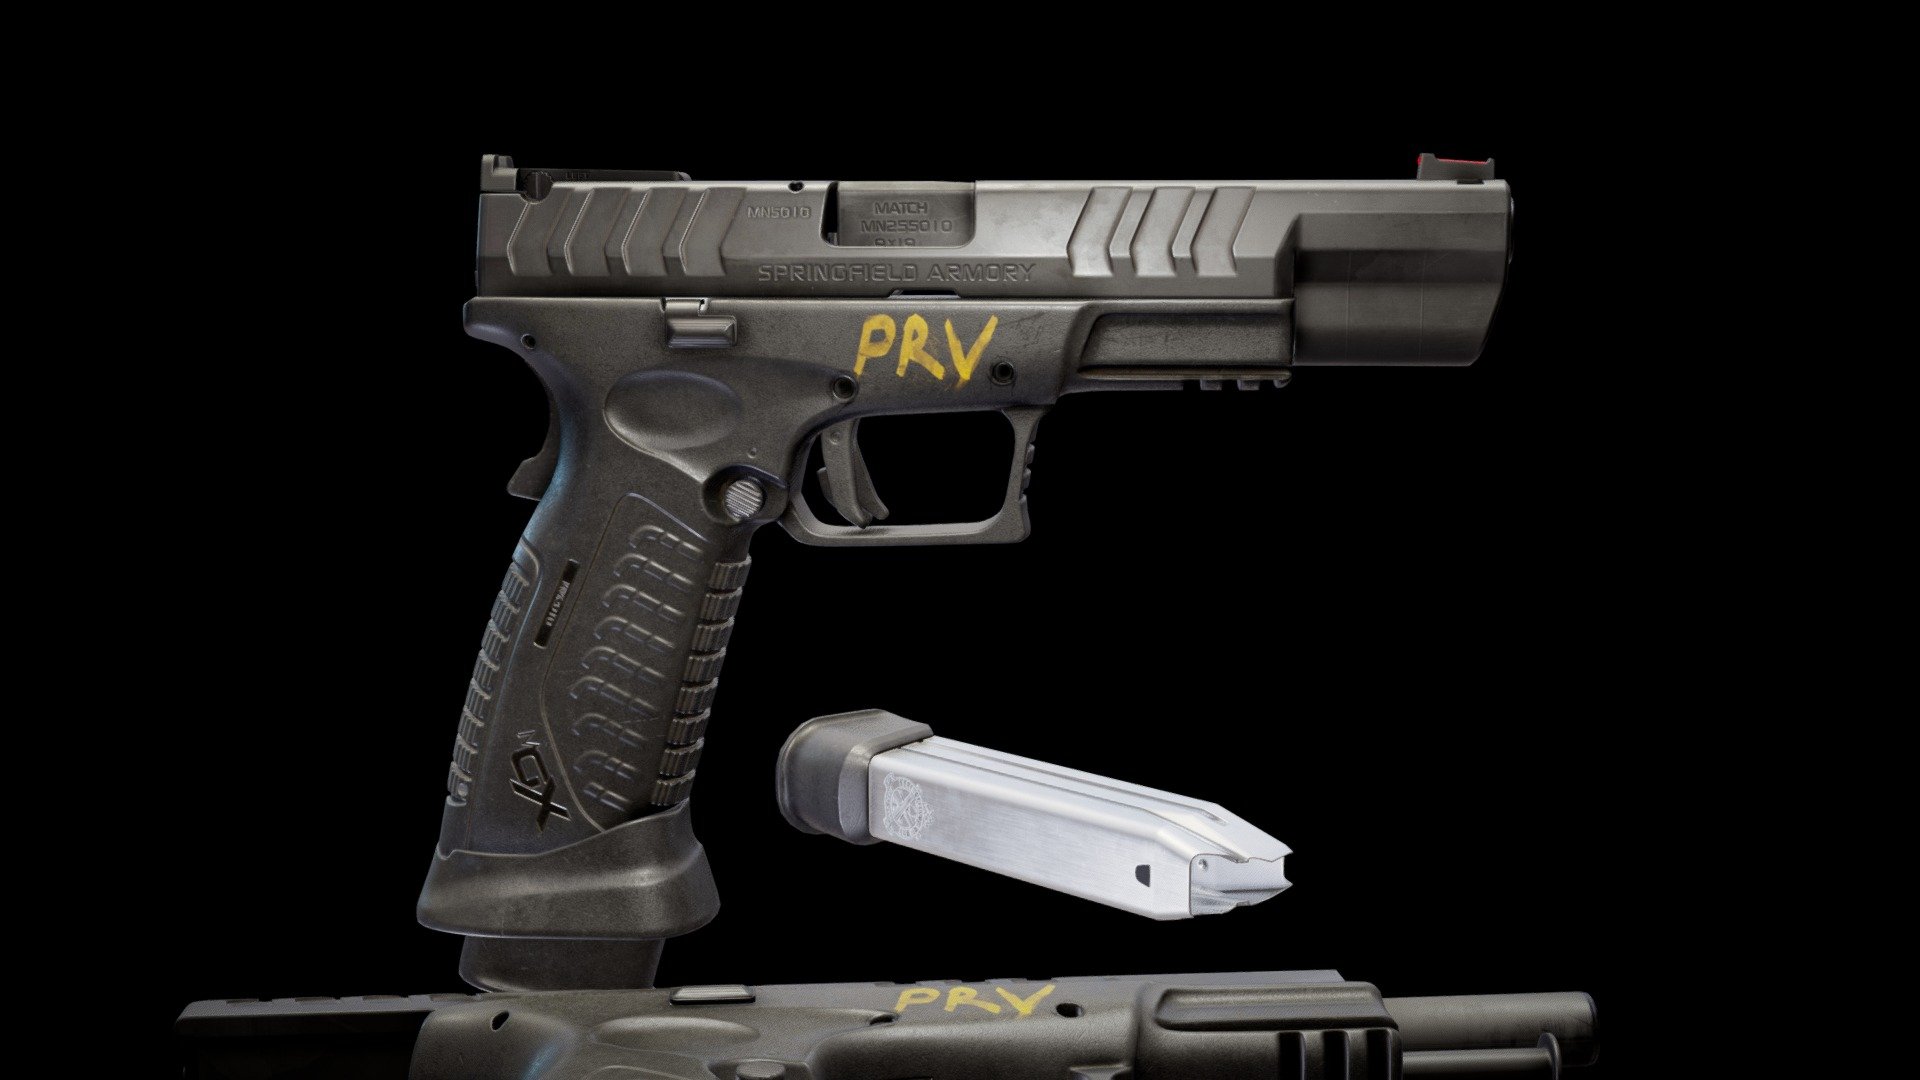 Handgun XD-M Elite 5.25 (personal work )
Modeling - Blender , ZBrush (21,936 tris)
Texturing - Substance Painter (1 set - 4 k )

more renders - https://www.artstation.com/artwork/18Q552 - XD-M Elite 5.25 Handgun - 3D model by PRVXY 3d model